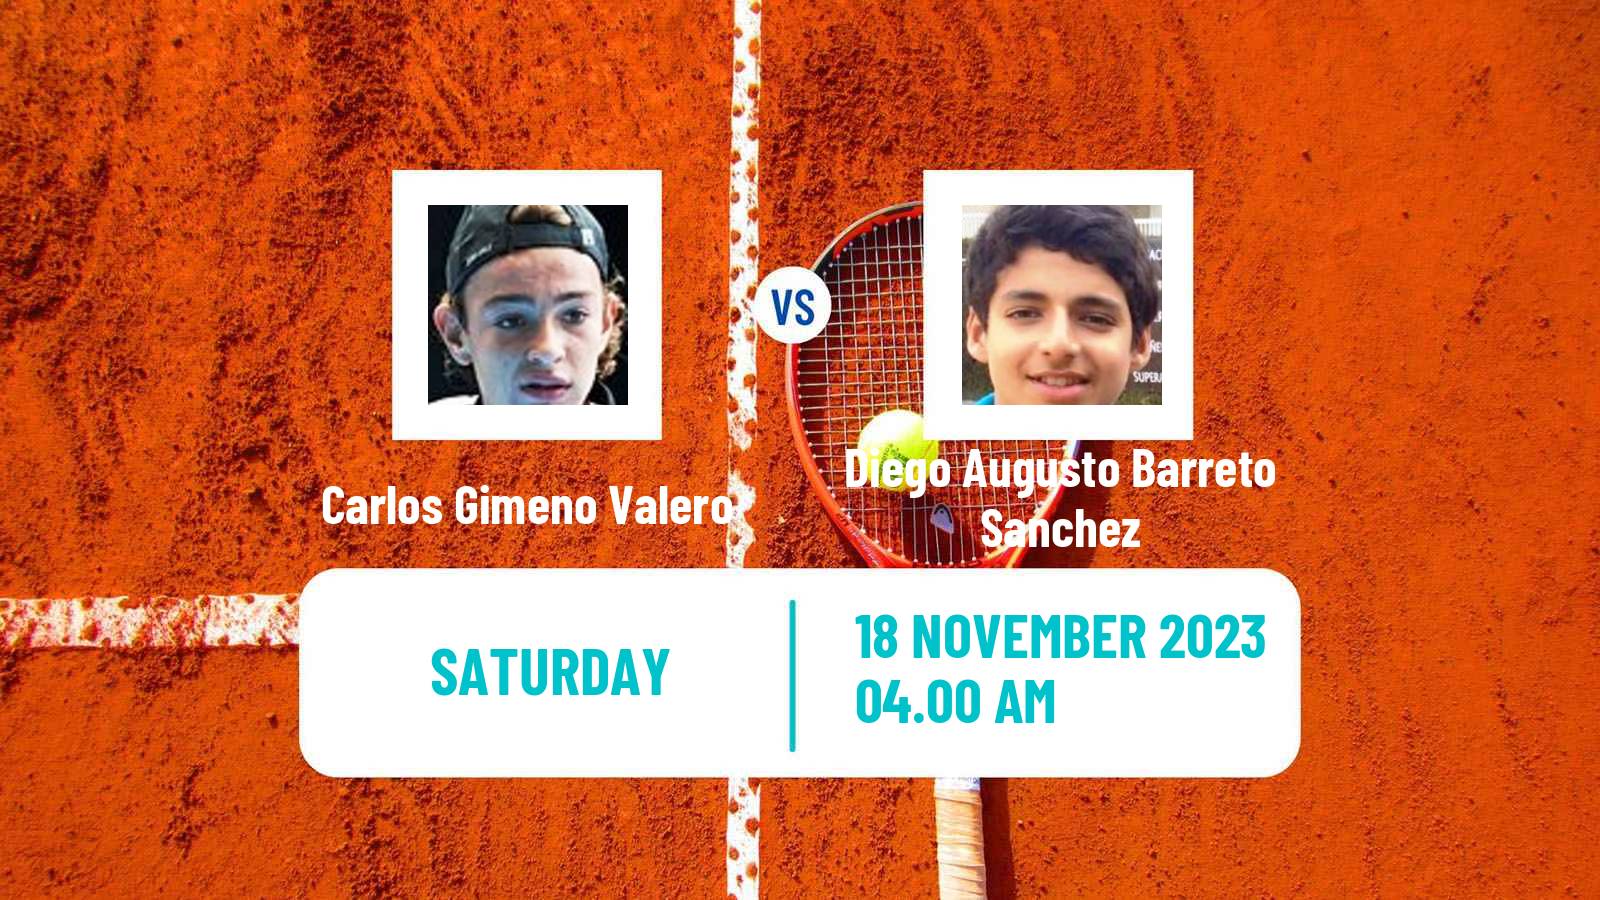 Tennis ITF M15 Valencia Men Carlos Gimeno Valero - Diego Augusto Barreto Sanchez